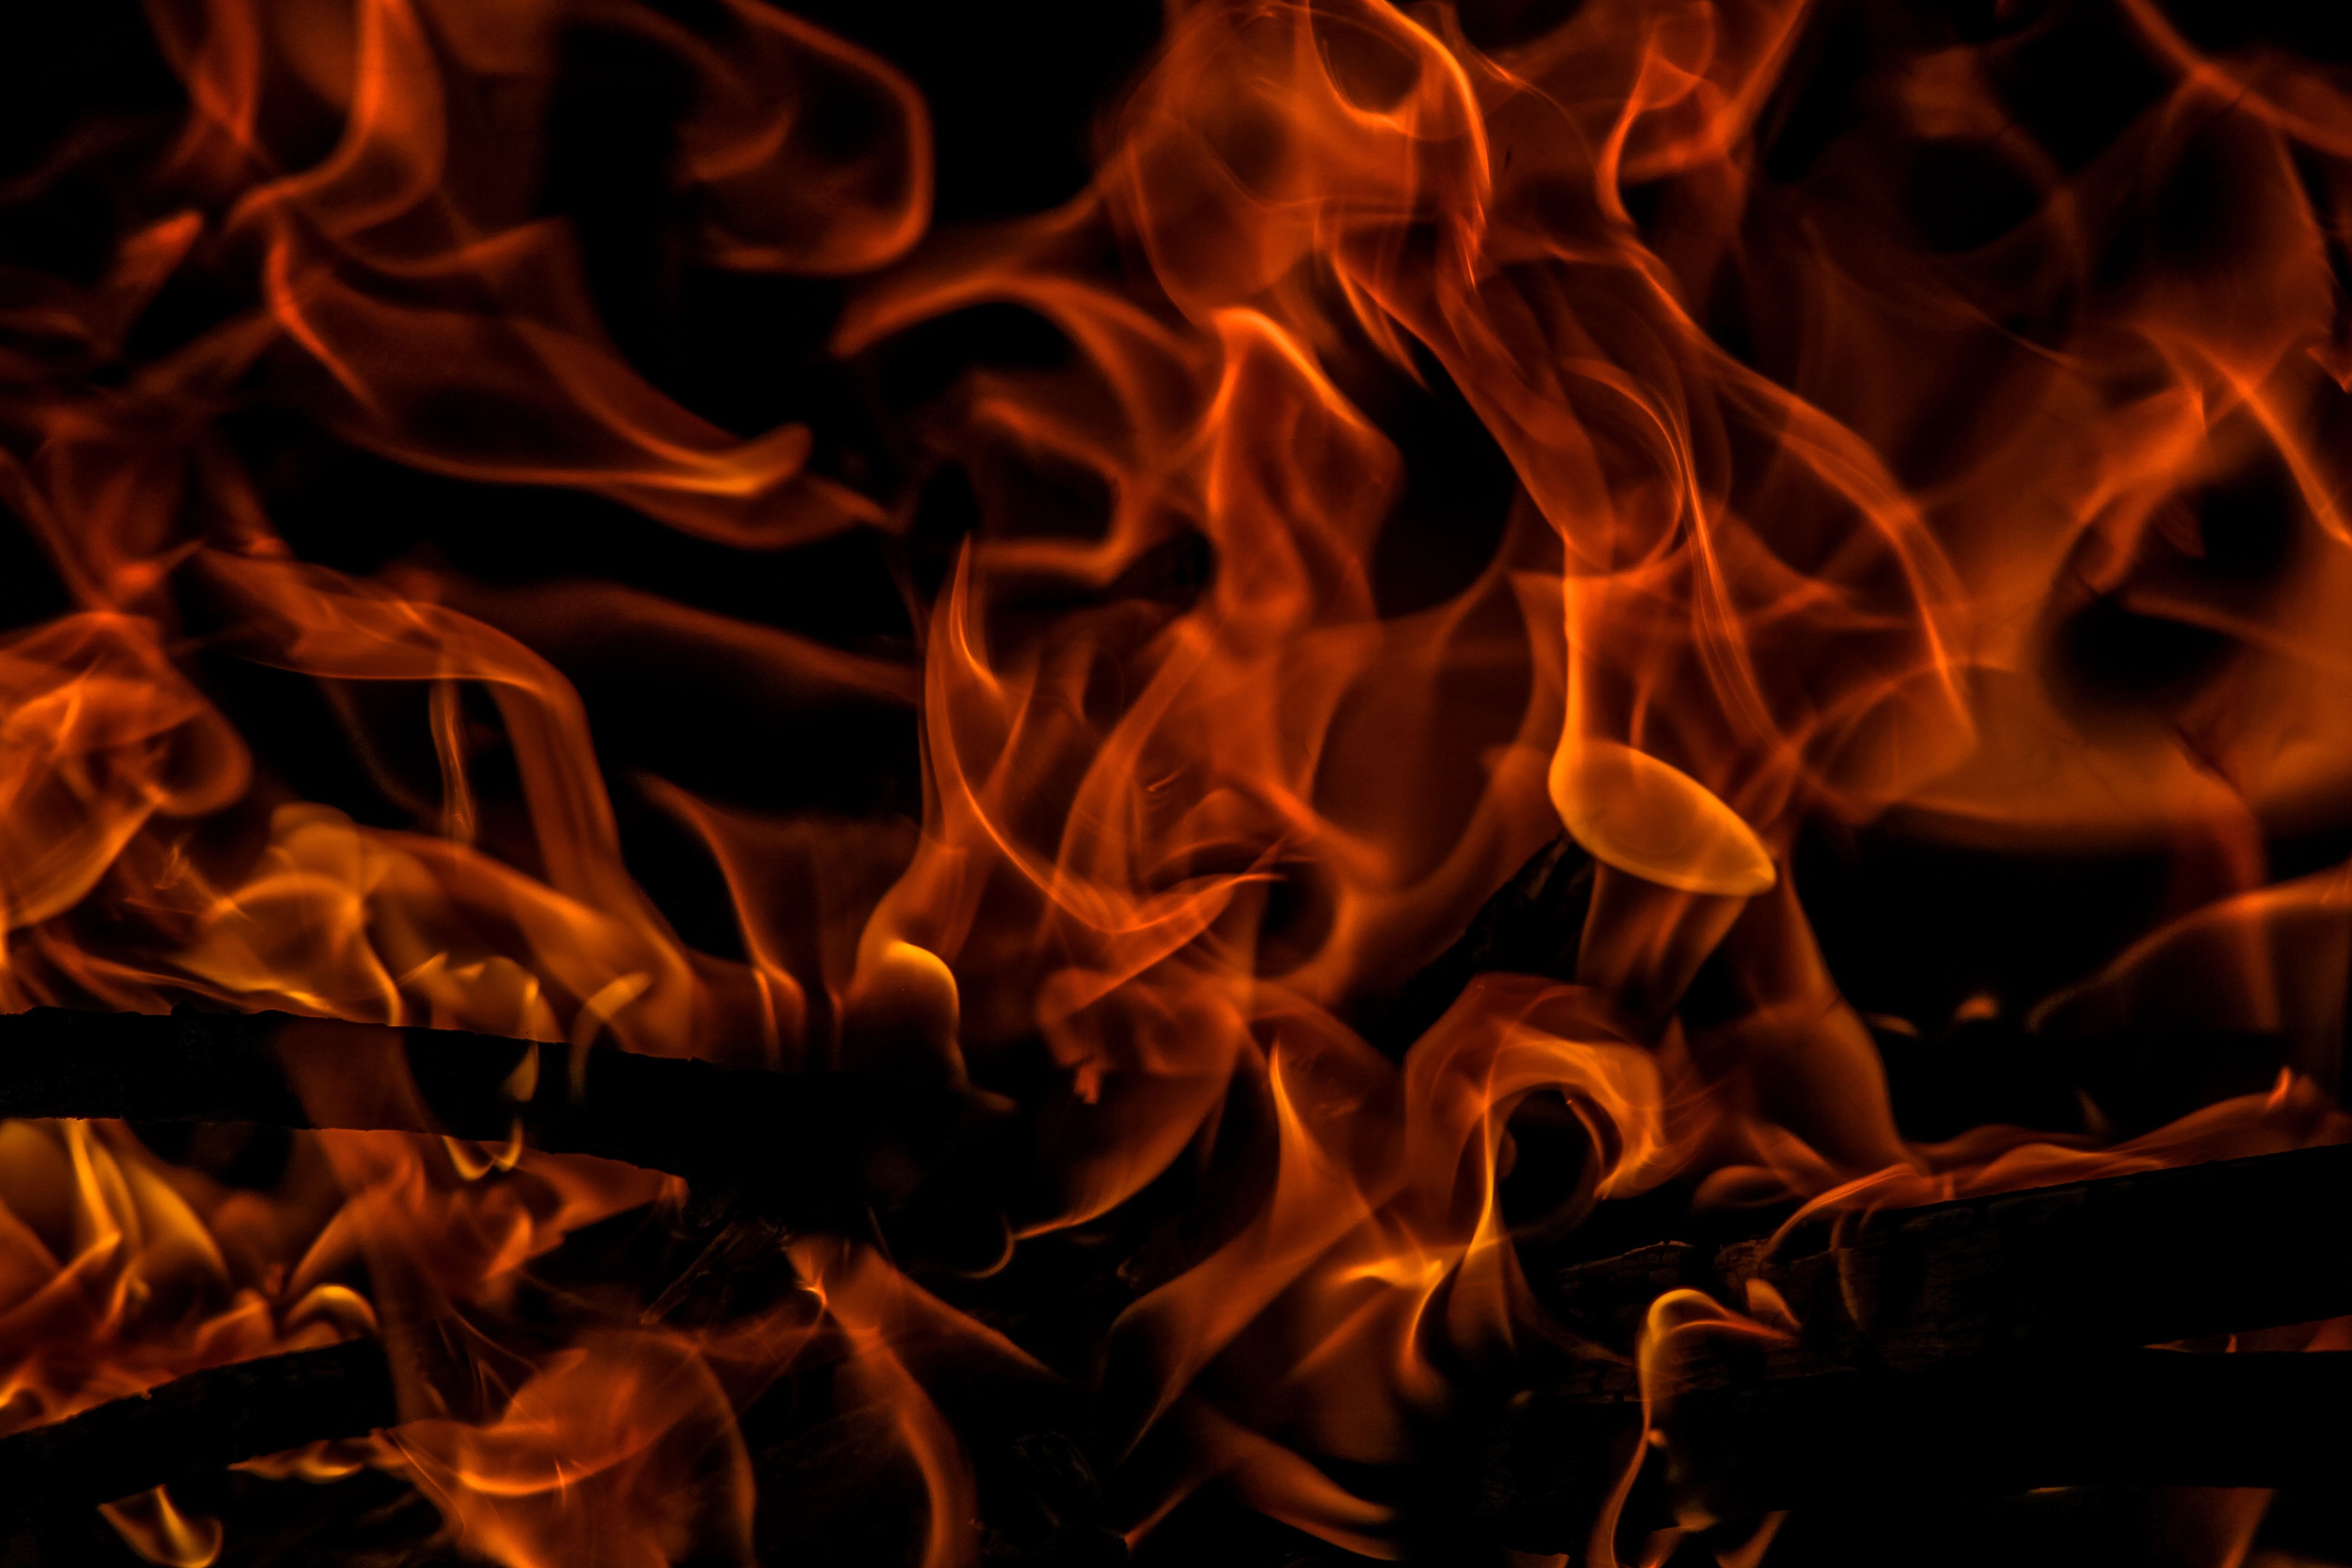 Flames Wallpaper · Fotografía de archivo gratis